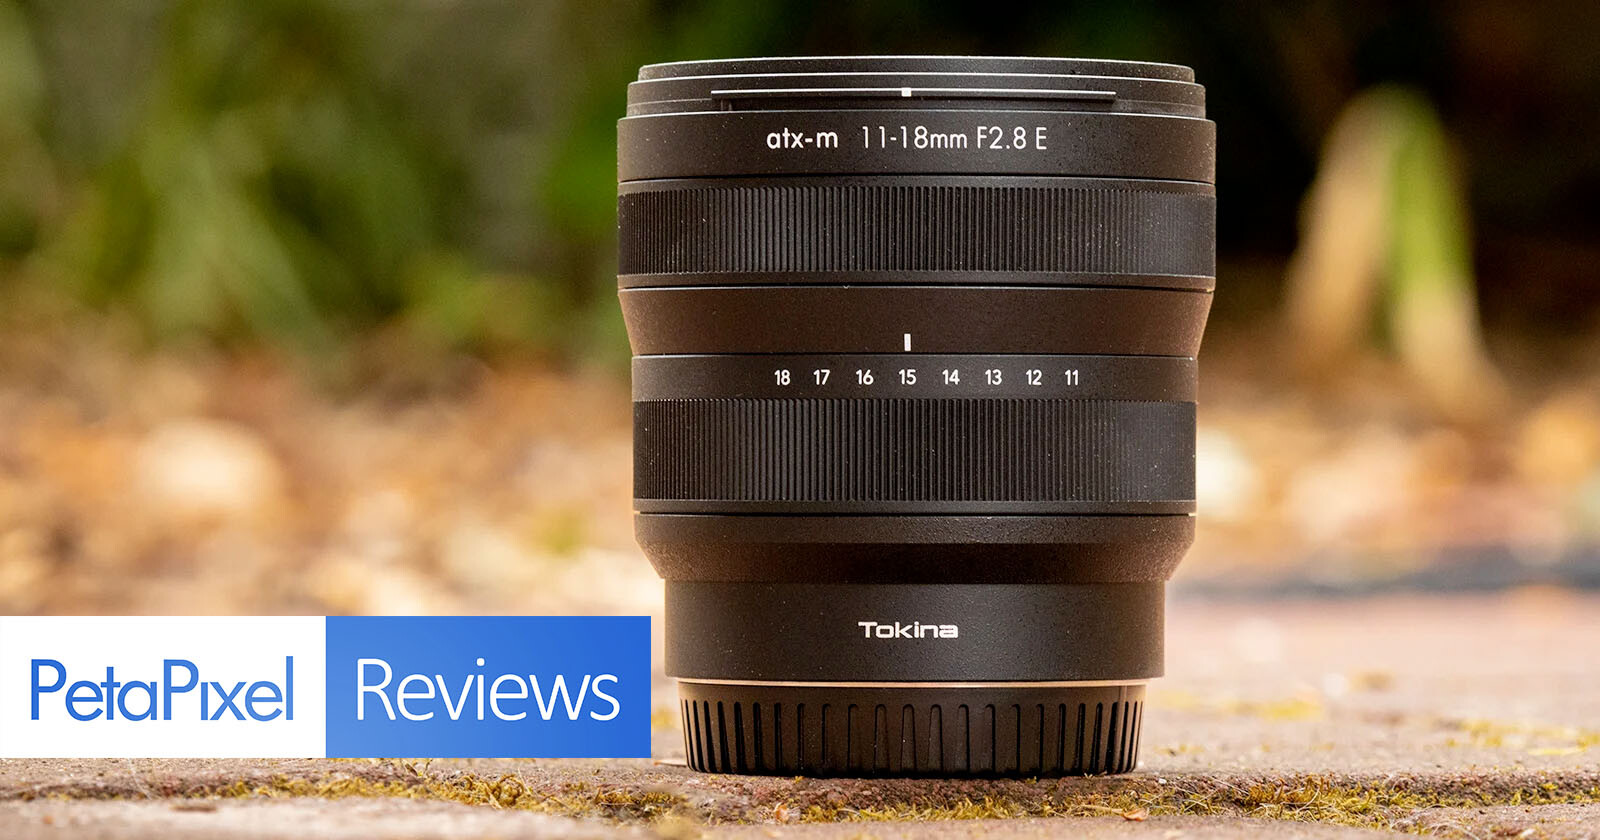  tokina 11-18mm atx-m review optics delicate lens 